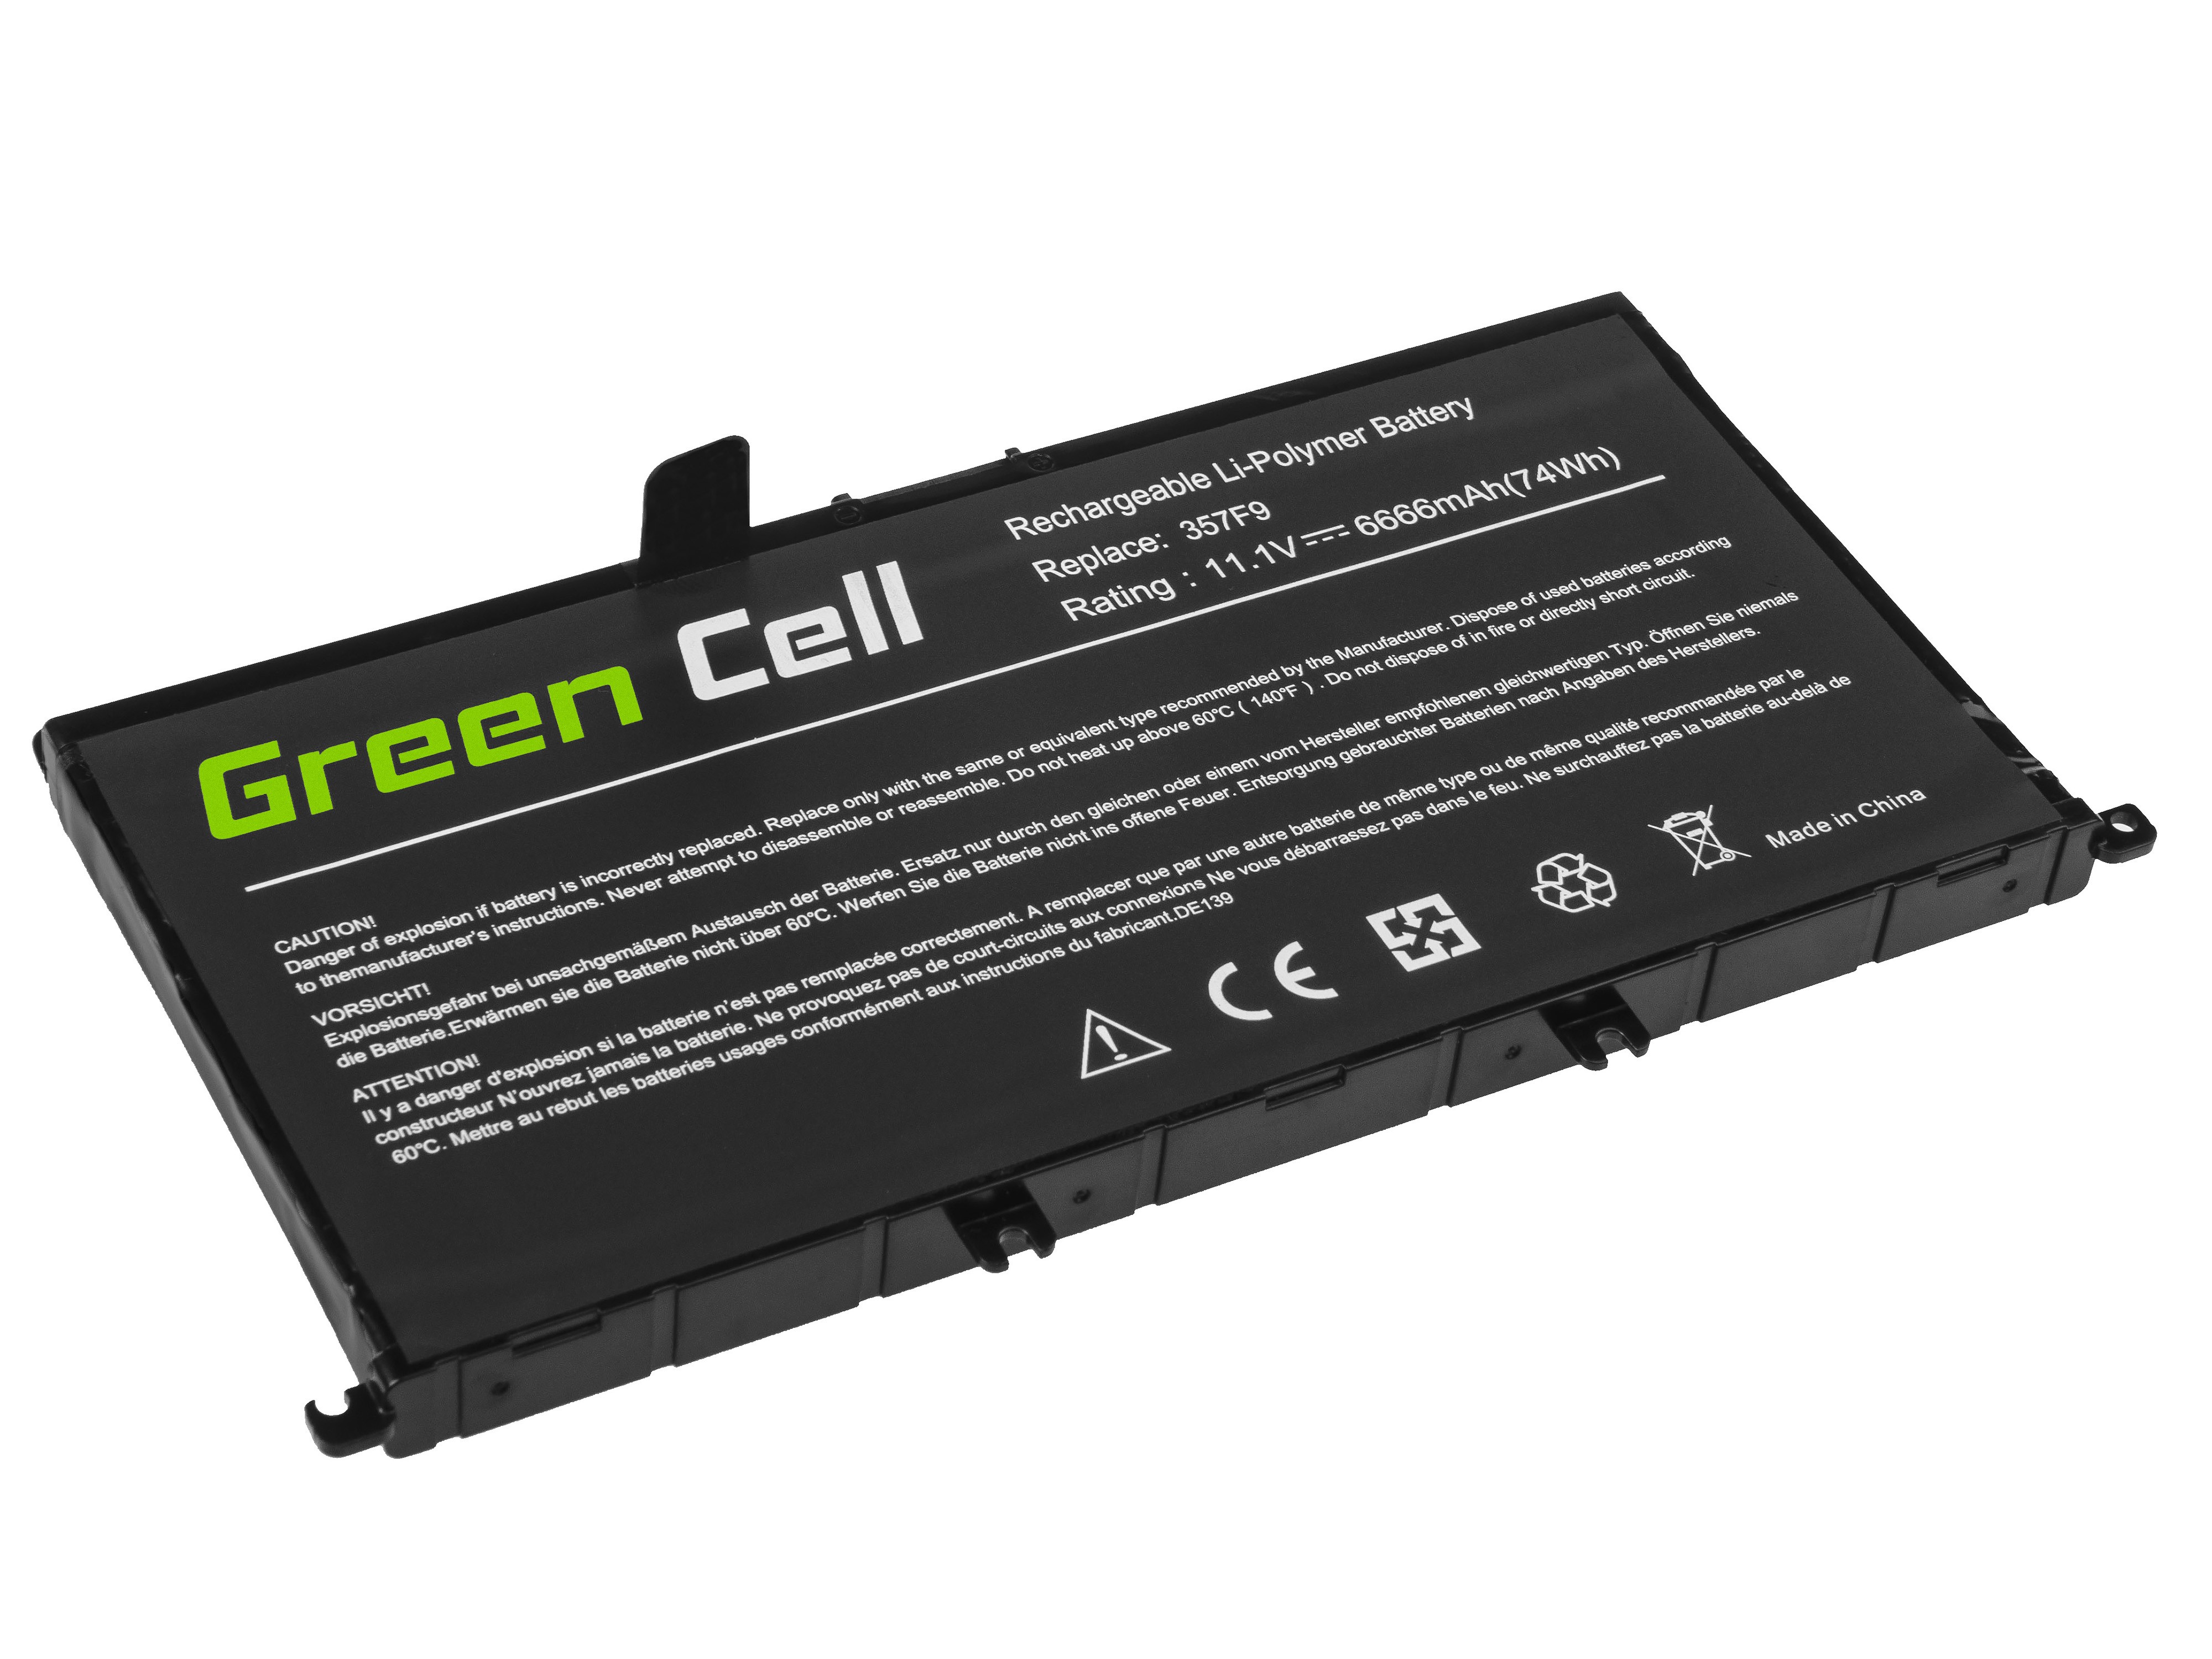 Green Cell batteri 357F9 till Dell Inspiron 15 5576 5577 7557 7559